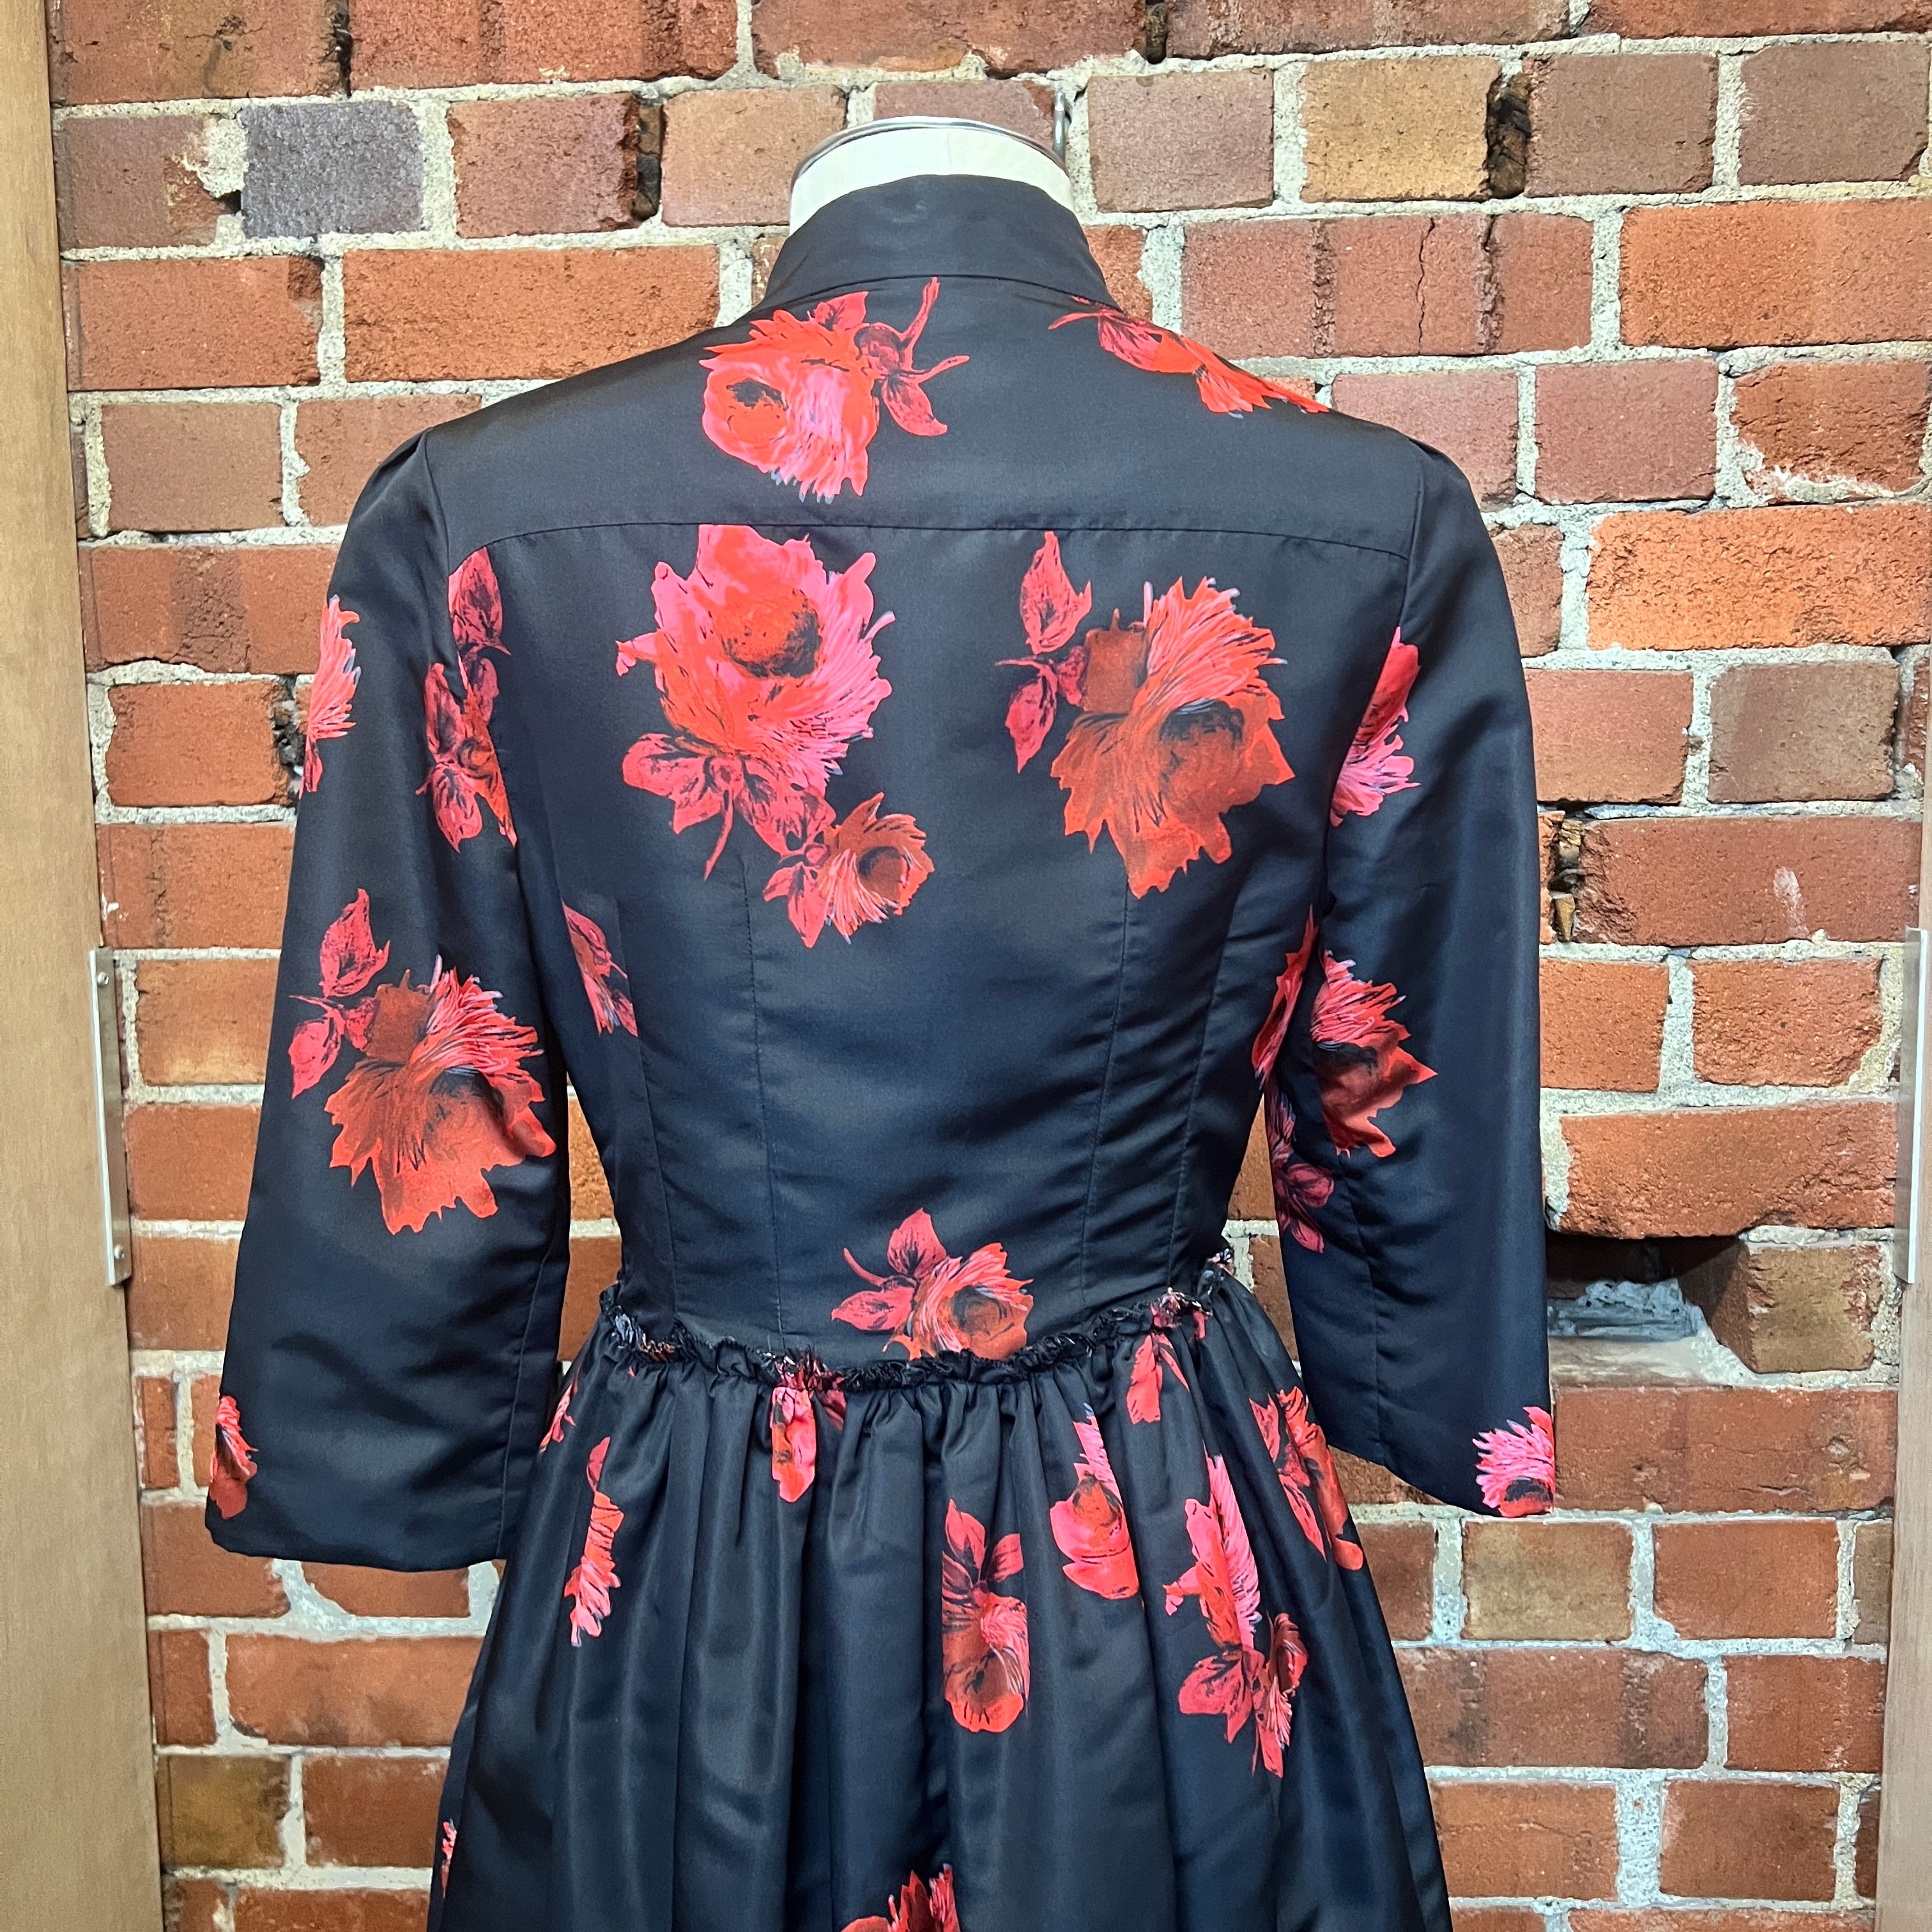 PRADA rose printed dress